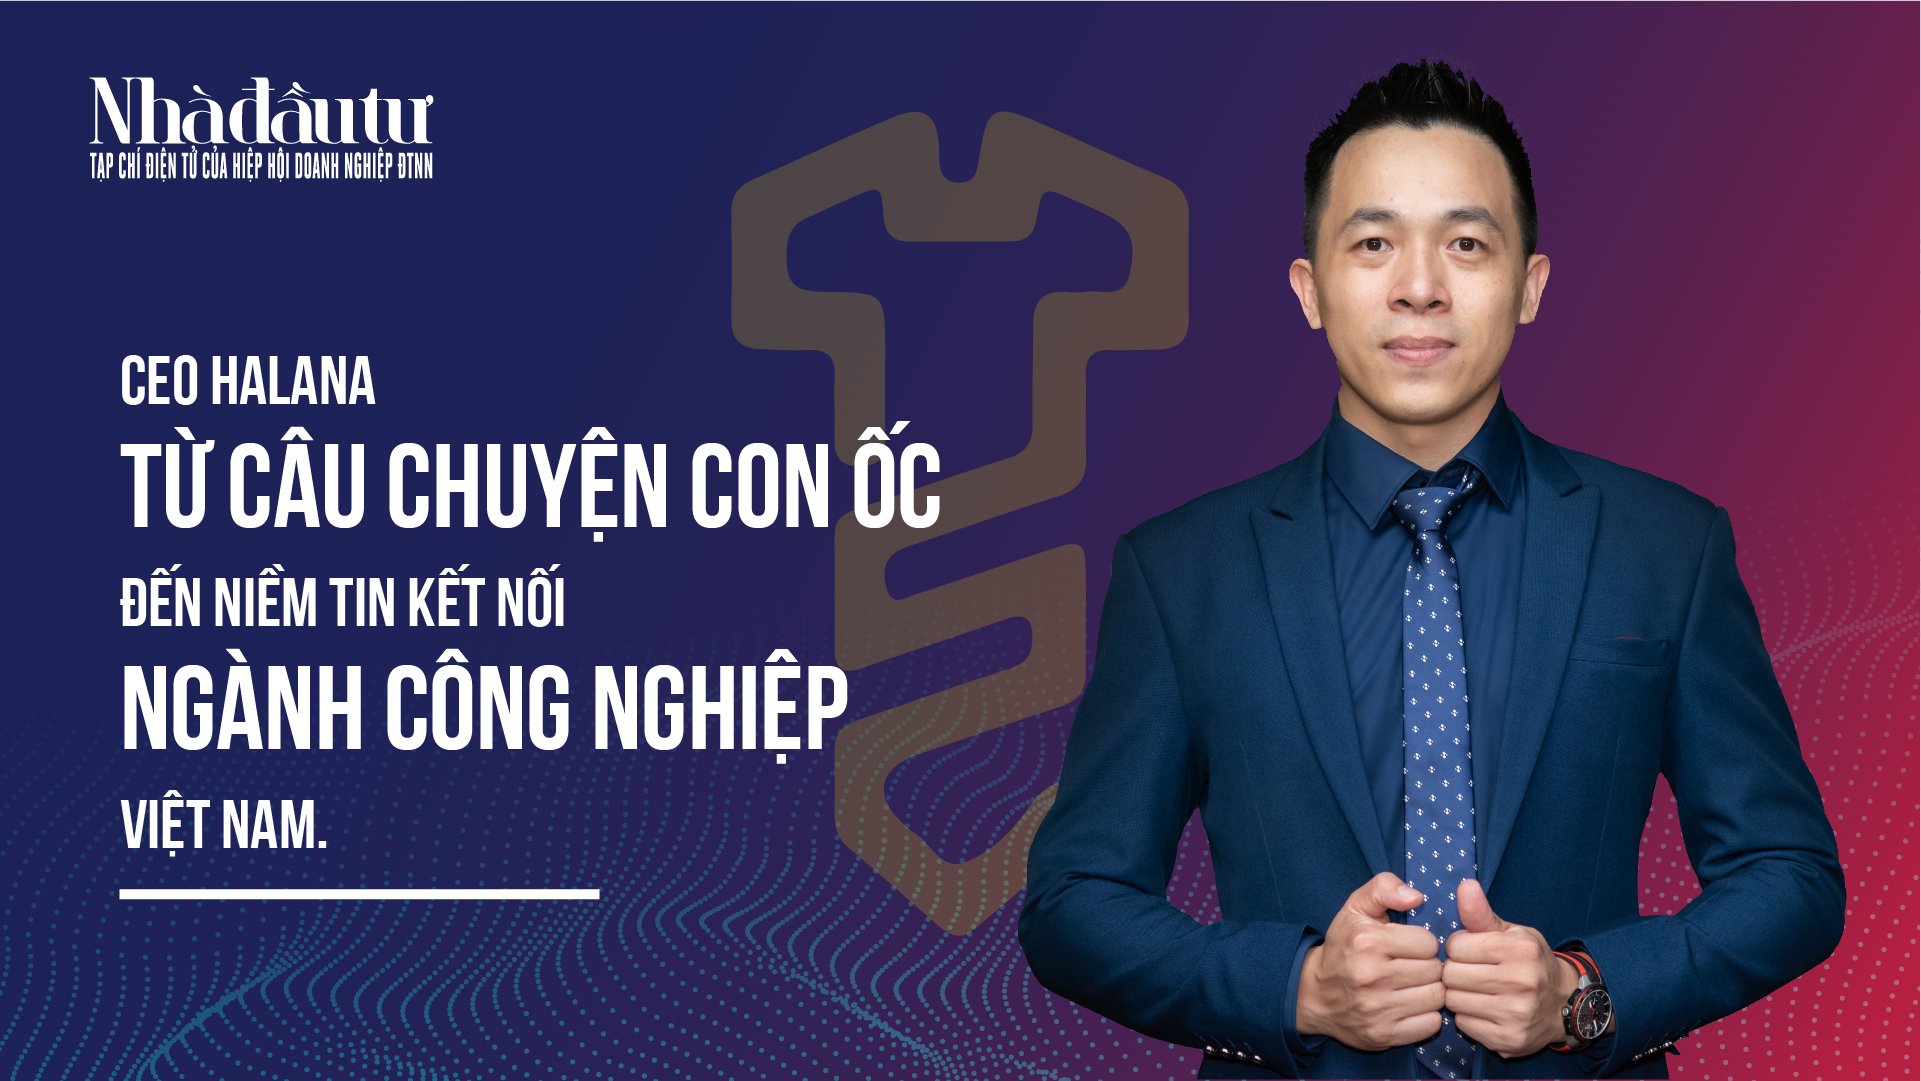 CEO Halana từ câu chuyện con ốc đến niềm tin kết nối ngành công nghiệp Việt Nam